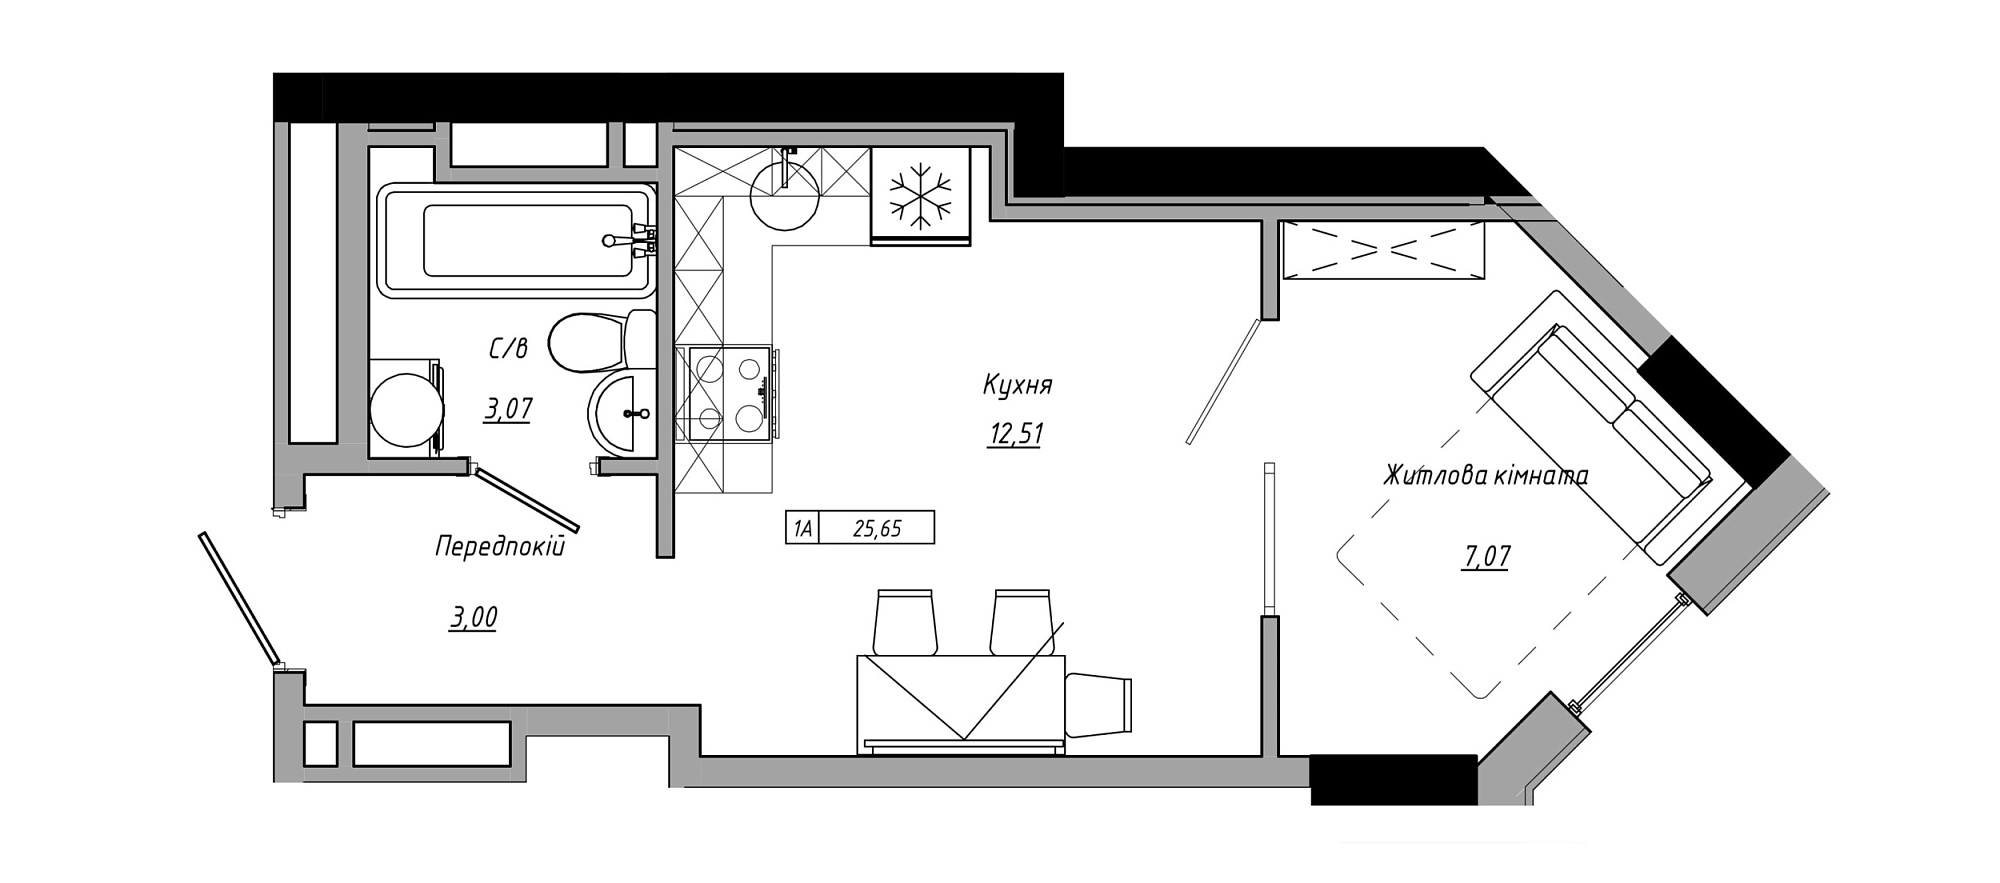 Планування 1-к квартира площею 25.65м2, AB-21-06/00001.